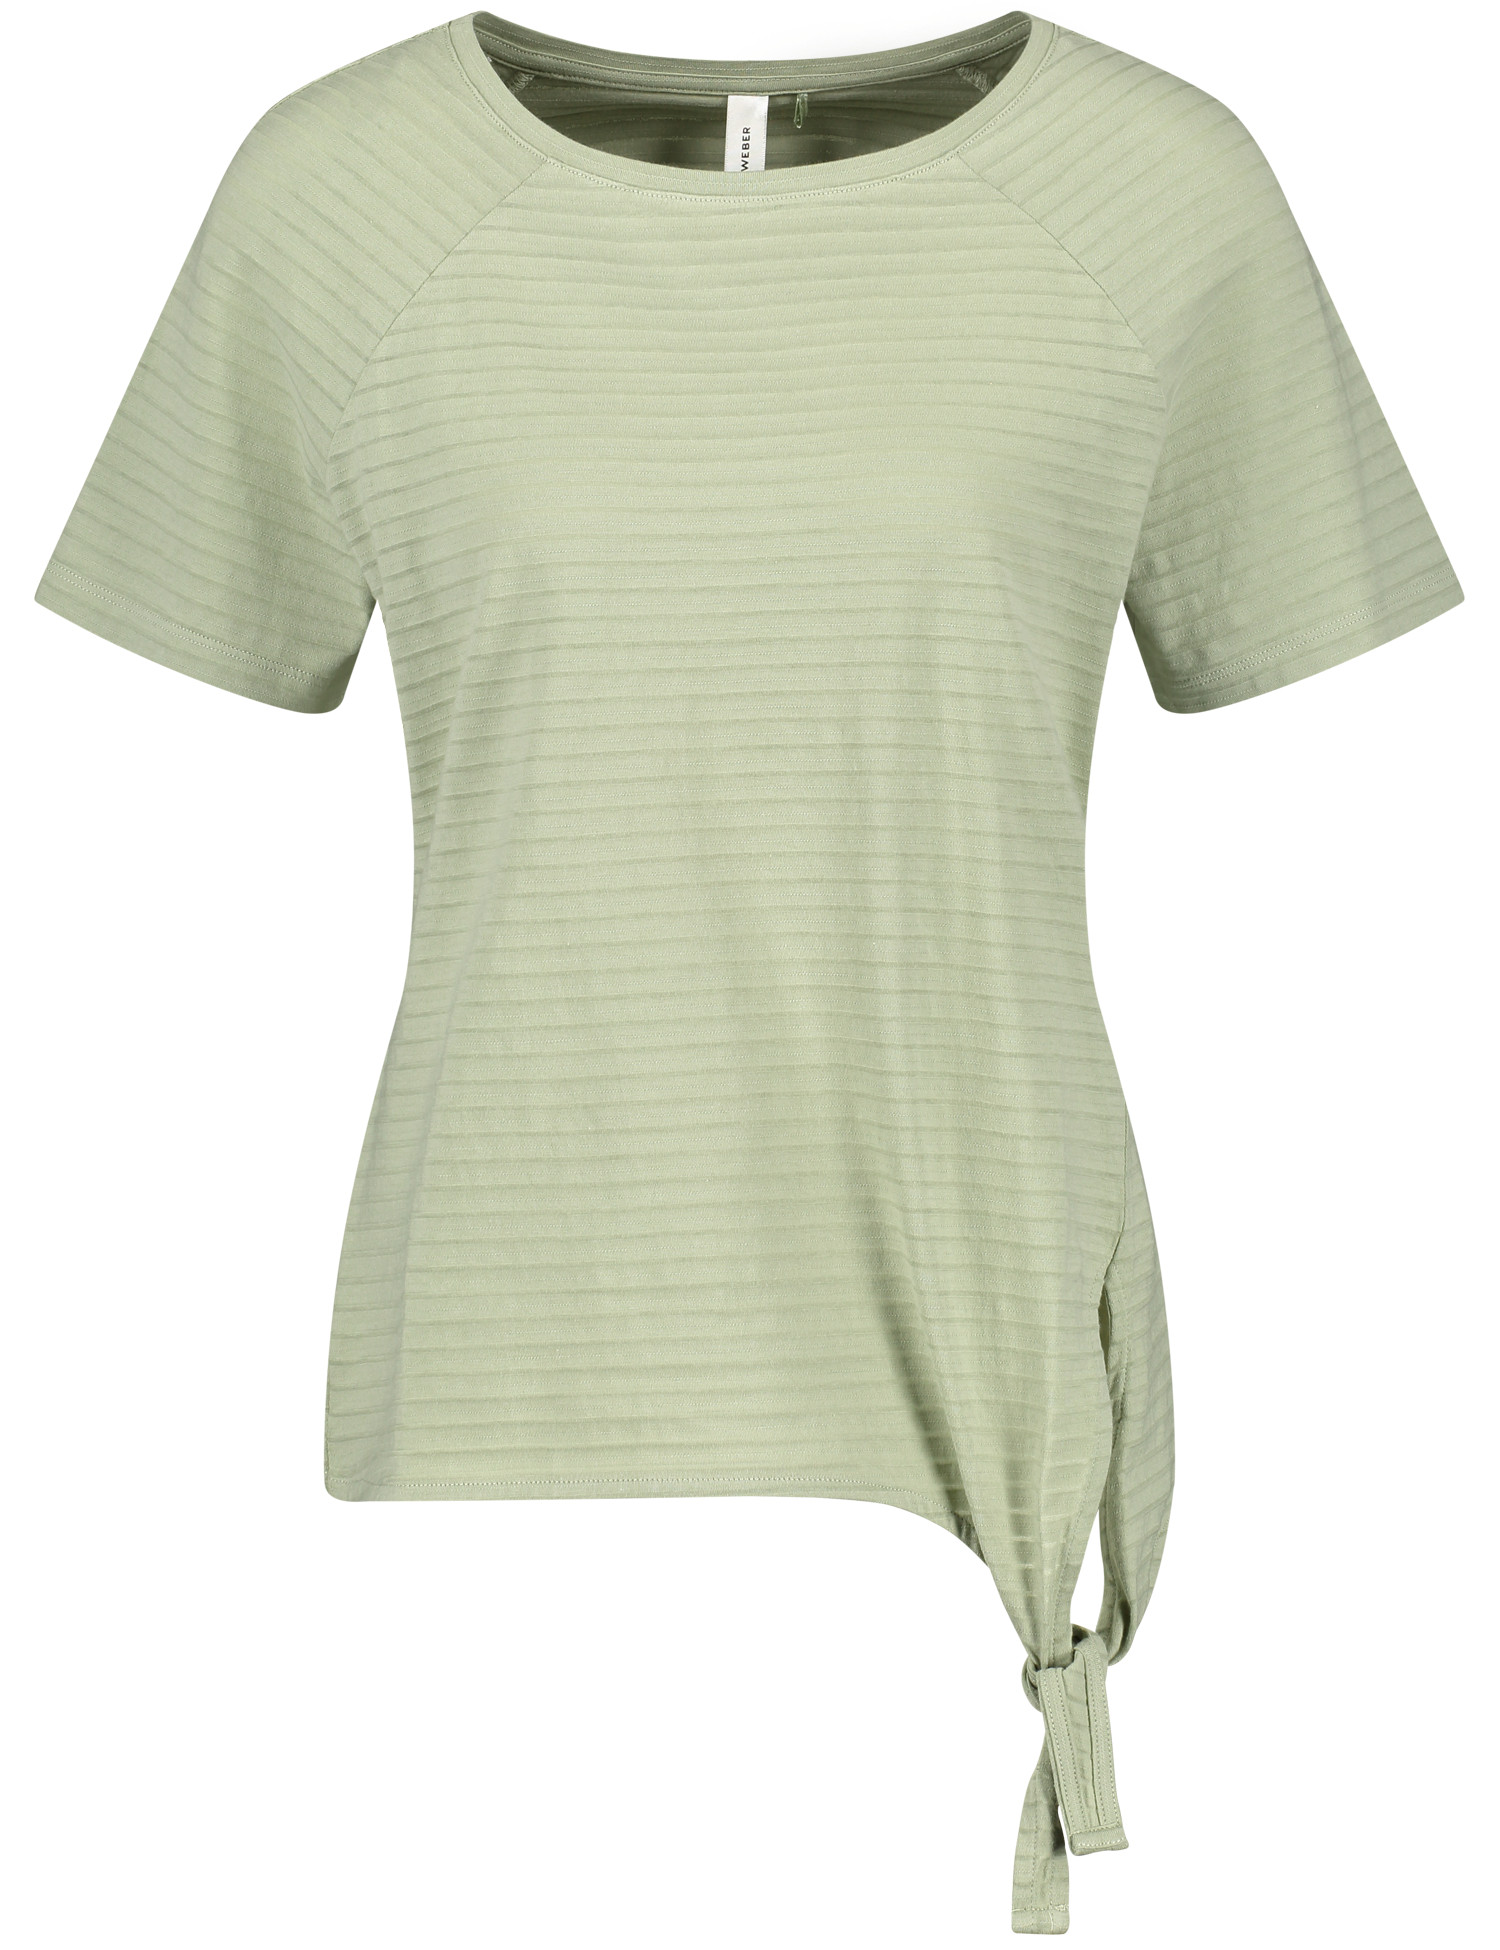 Baumwoll-Shirt mit Knotendetail